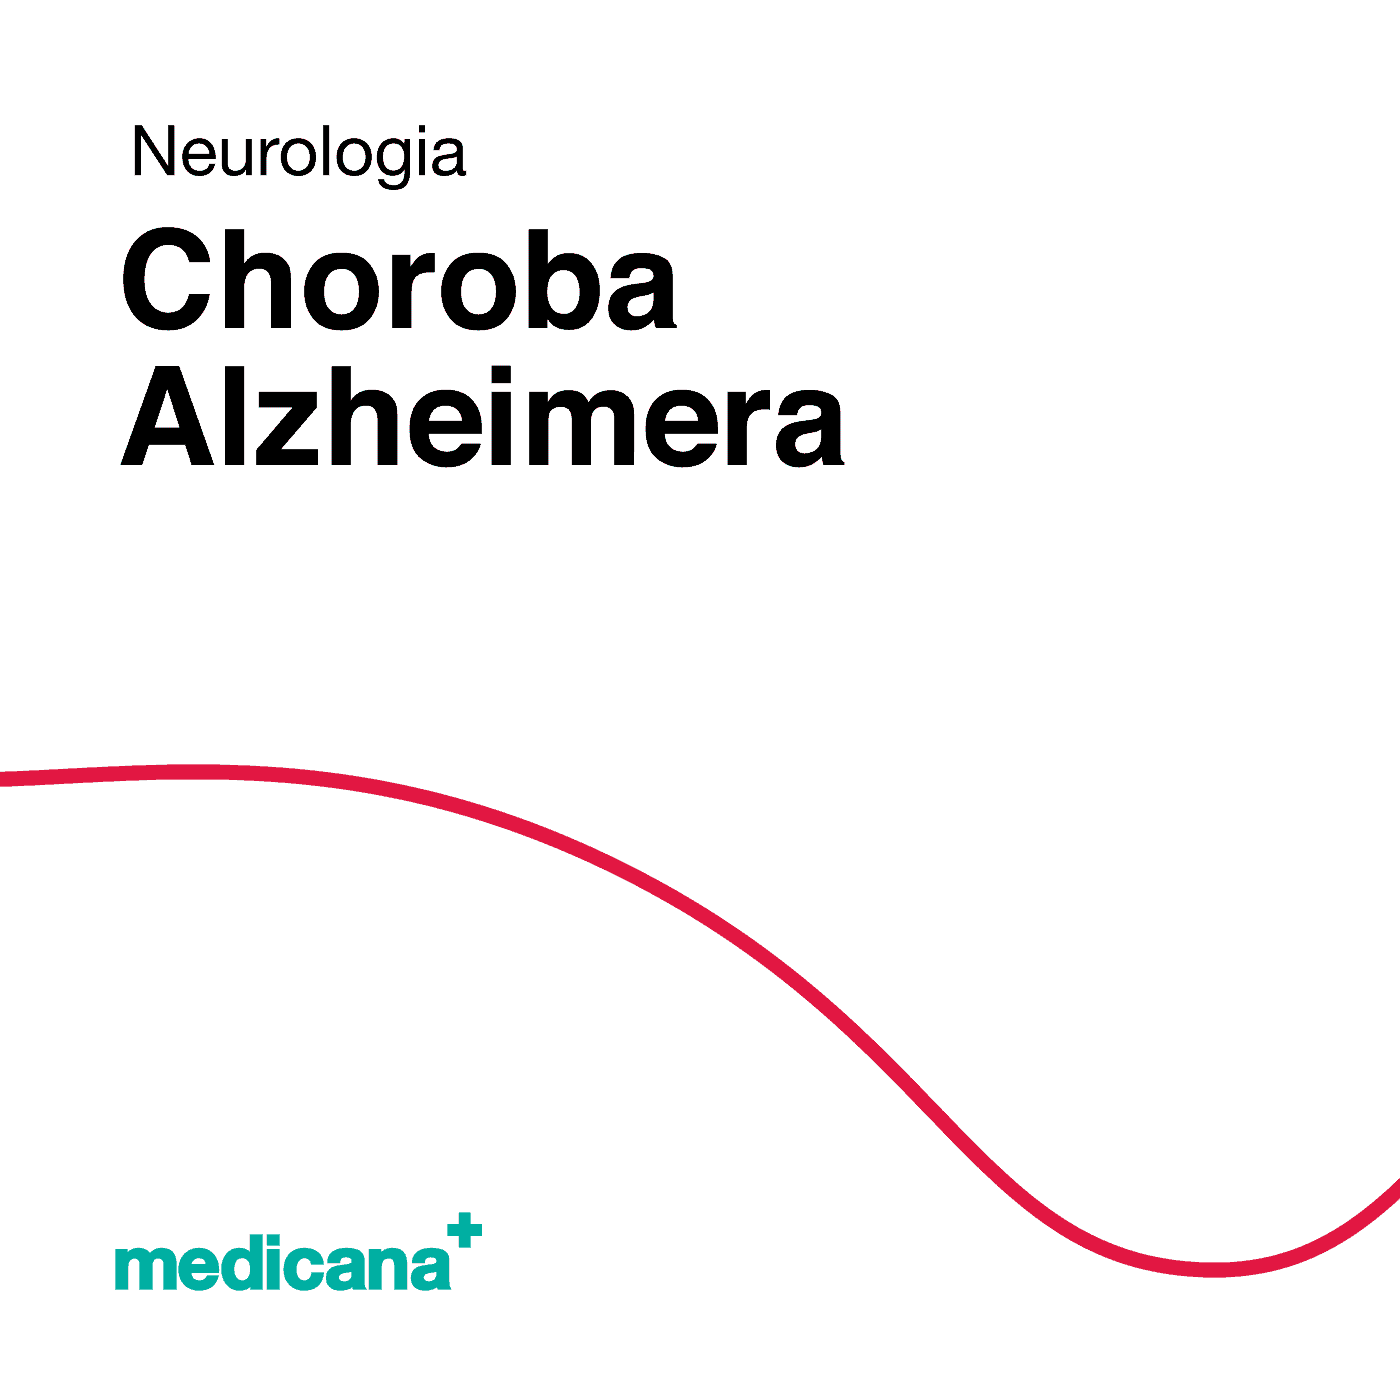 Grafika, białe tło z czerwoną kreską, czarnym napisem Neurologia - Choroba Alzheimera i logo Medicana Centrum Terapii Medyczna Marihuana w lewym dolnym rogu.